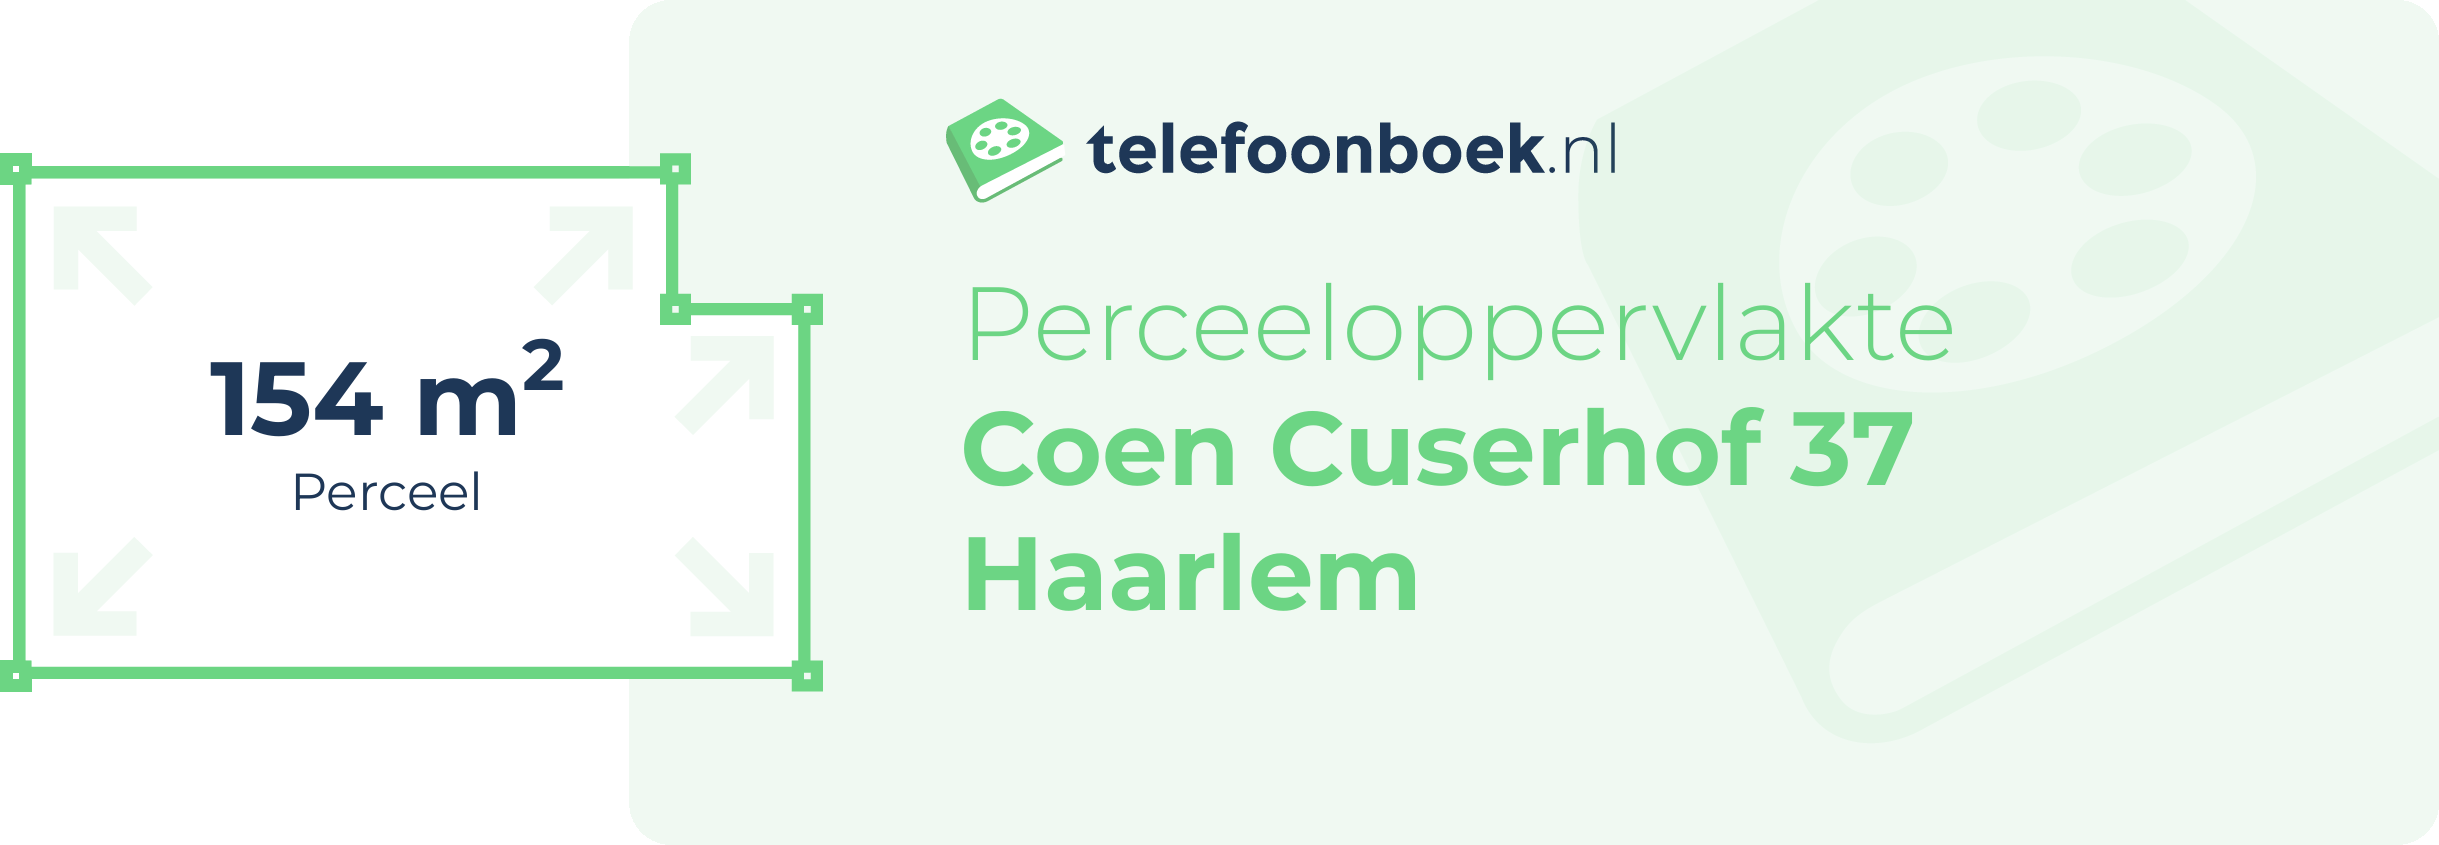 Perceeloppervlakte Coen Cuserhof 37 Haarlem